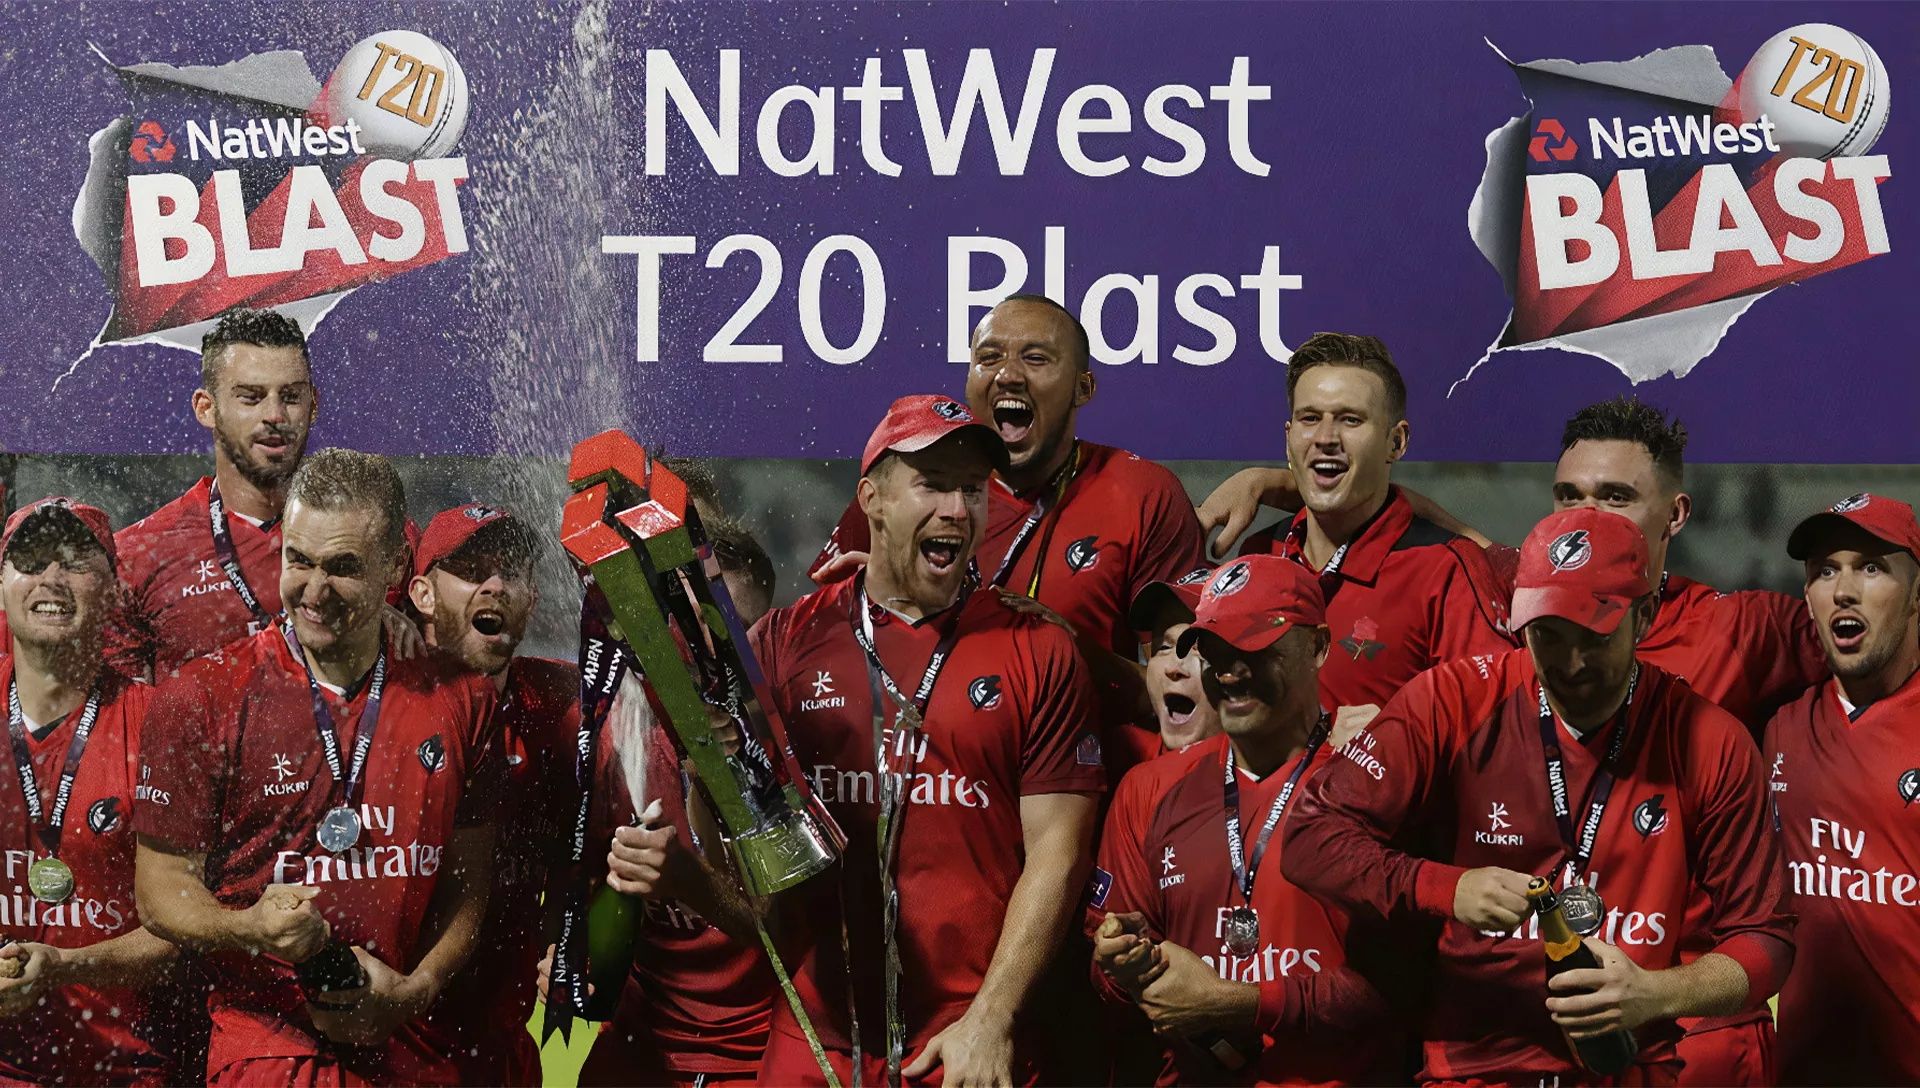 आप साइट पर पंजीकरण के बाद इंग्लैंड नेटवेस्ट टी 20 ब्लास्ट लीग पर दांव लगा सकते हैं